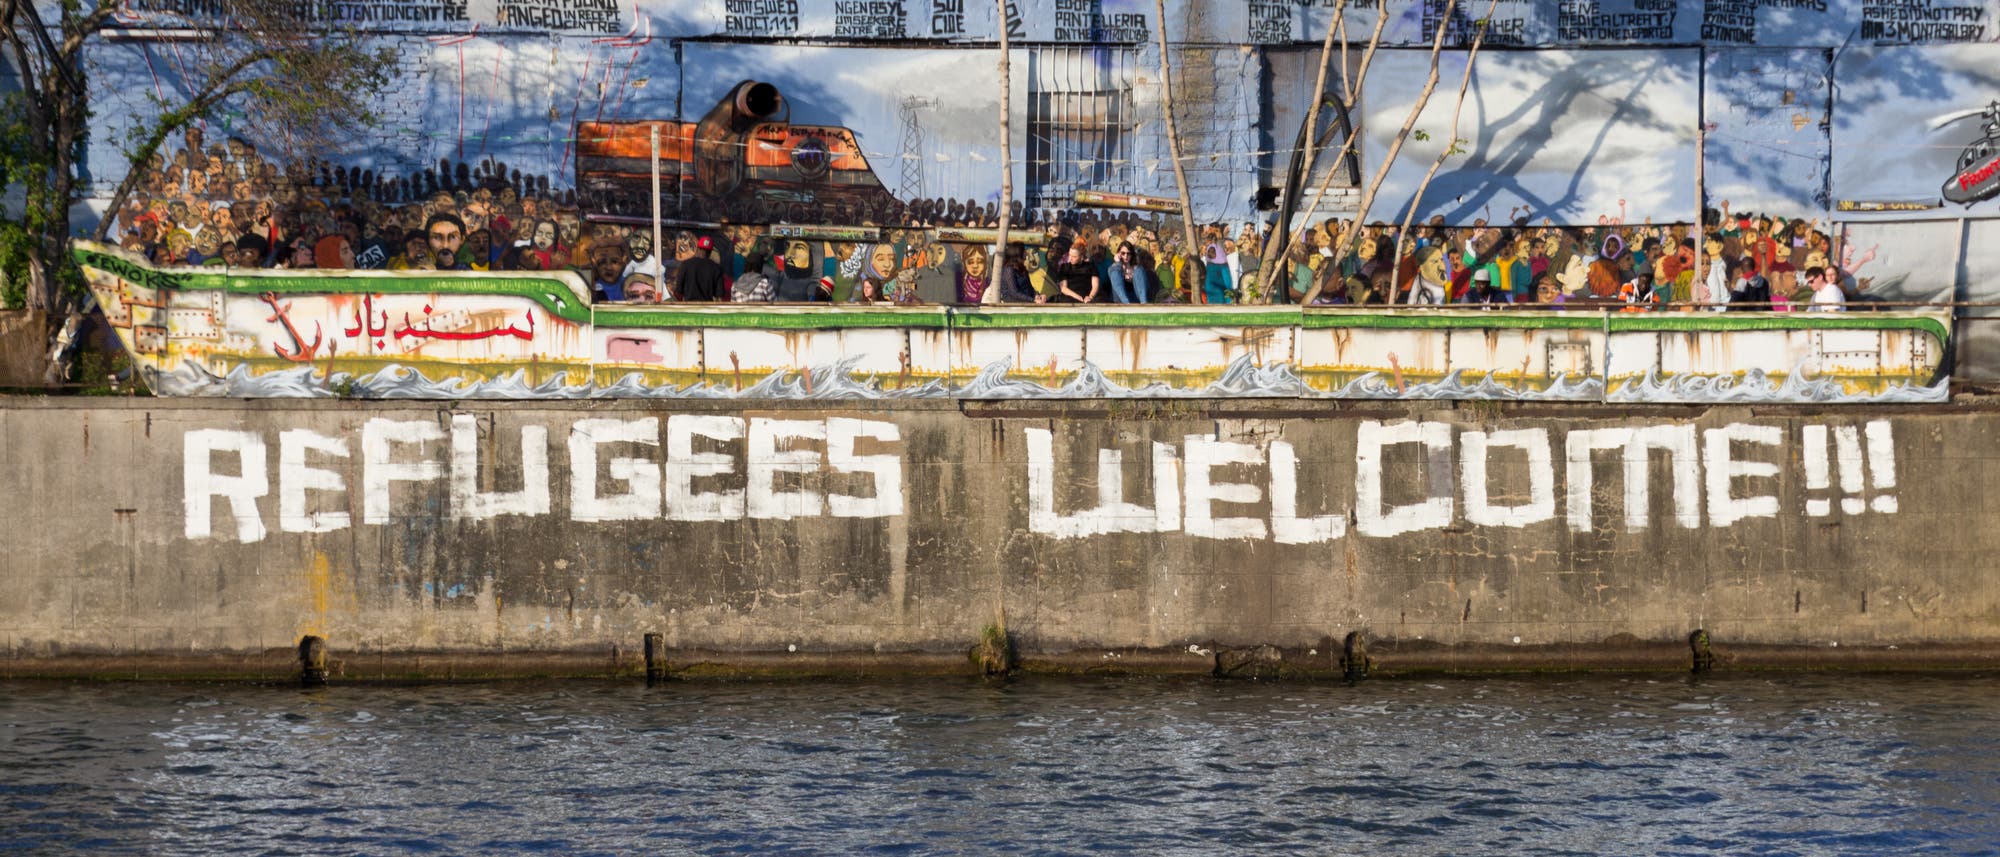 Auf eine Mauer am Rand eines Flusses befindet sich ein Graffito "Refugees Welcome".